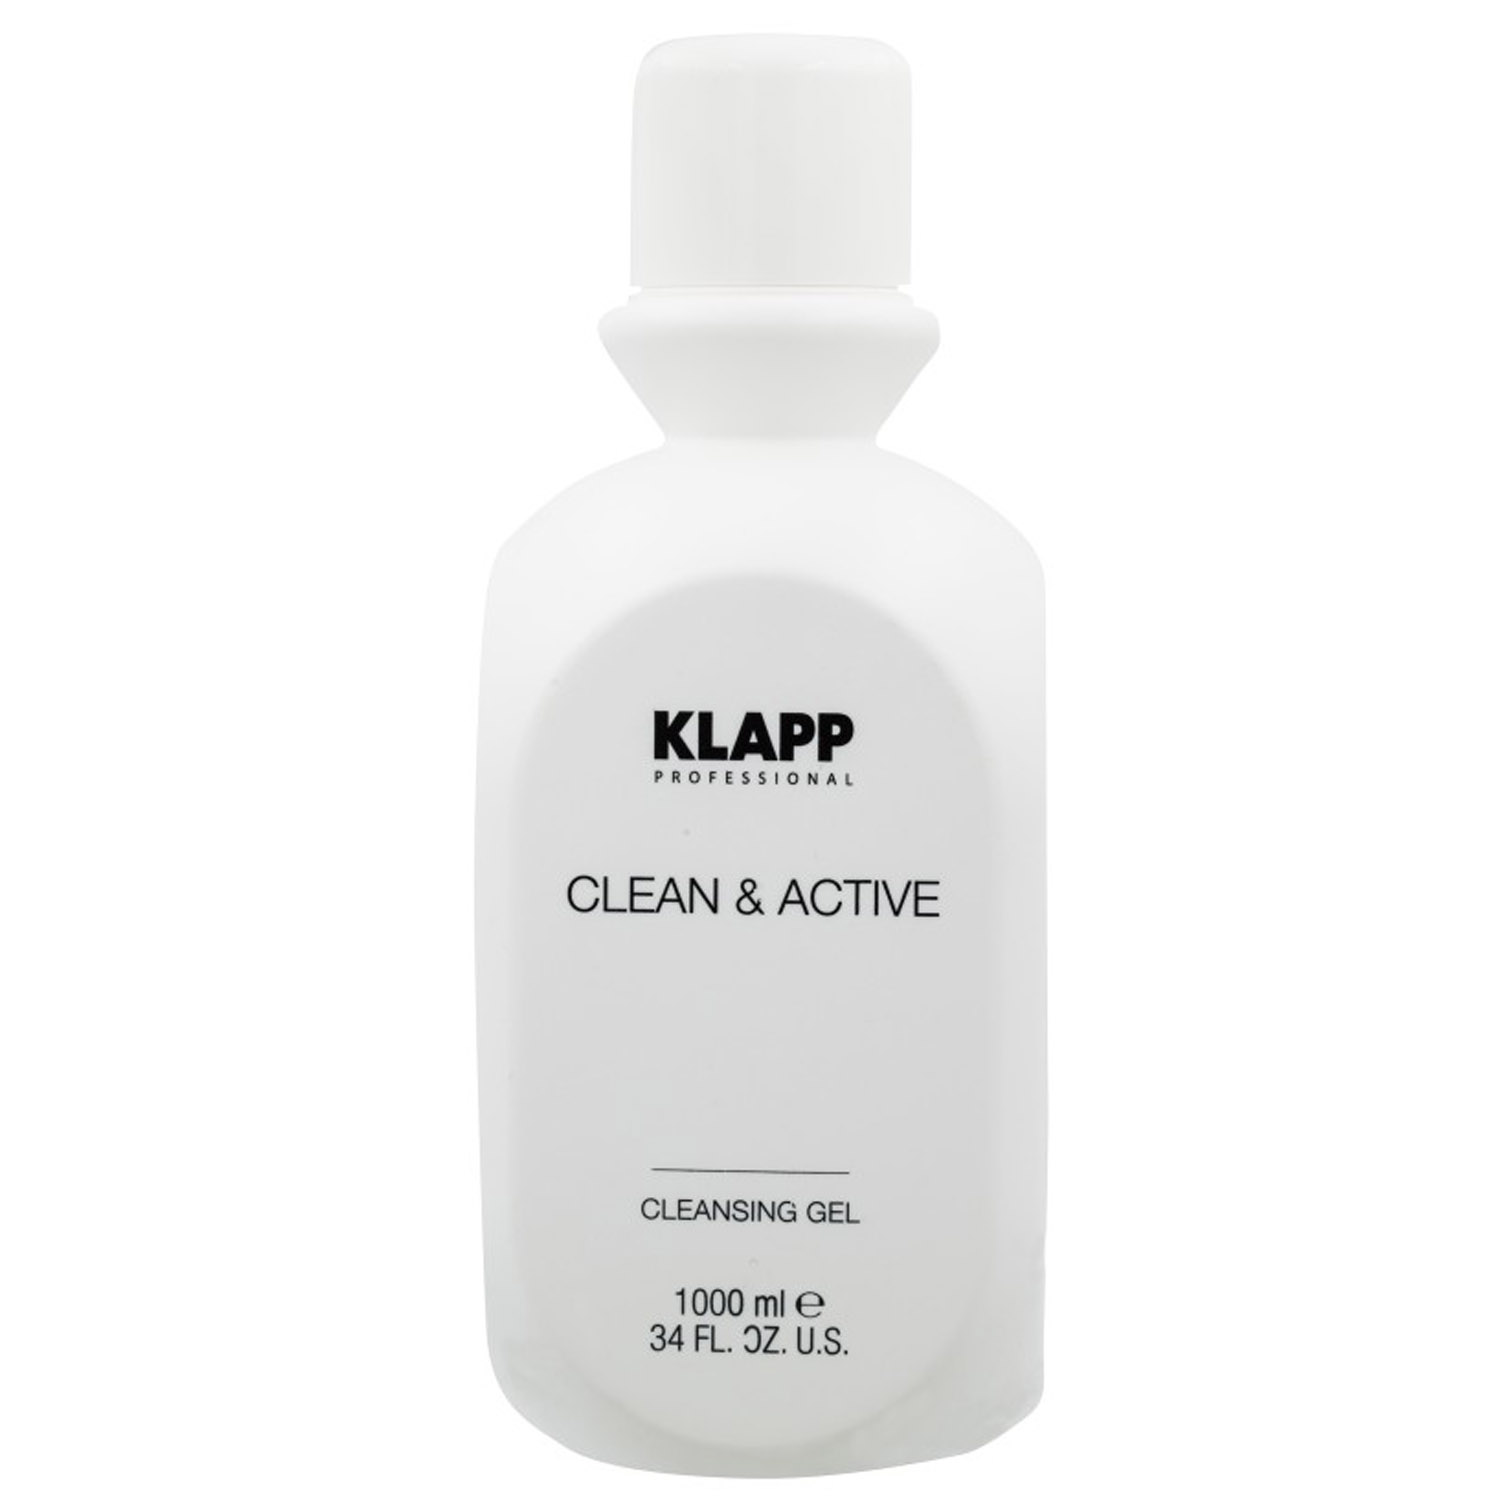 Очищающий гель Klapp Clean & Active Cleansing Gel, 1000 мл - фото 1